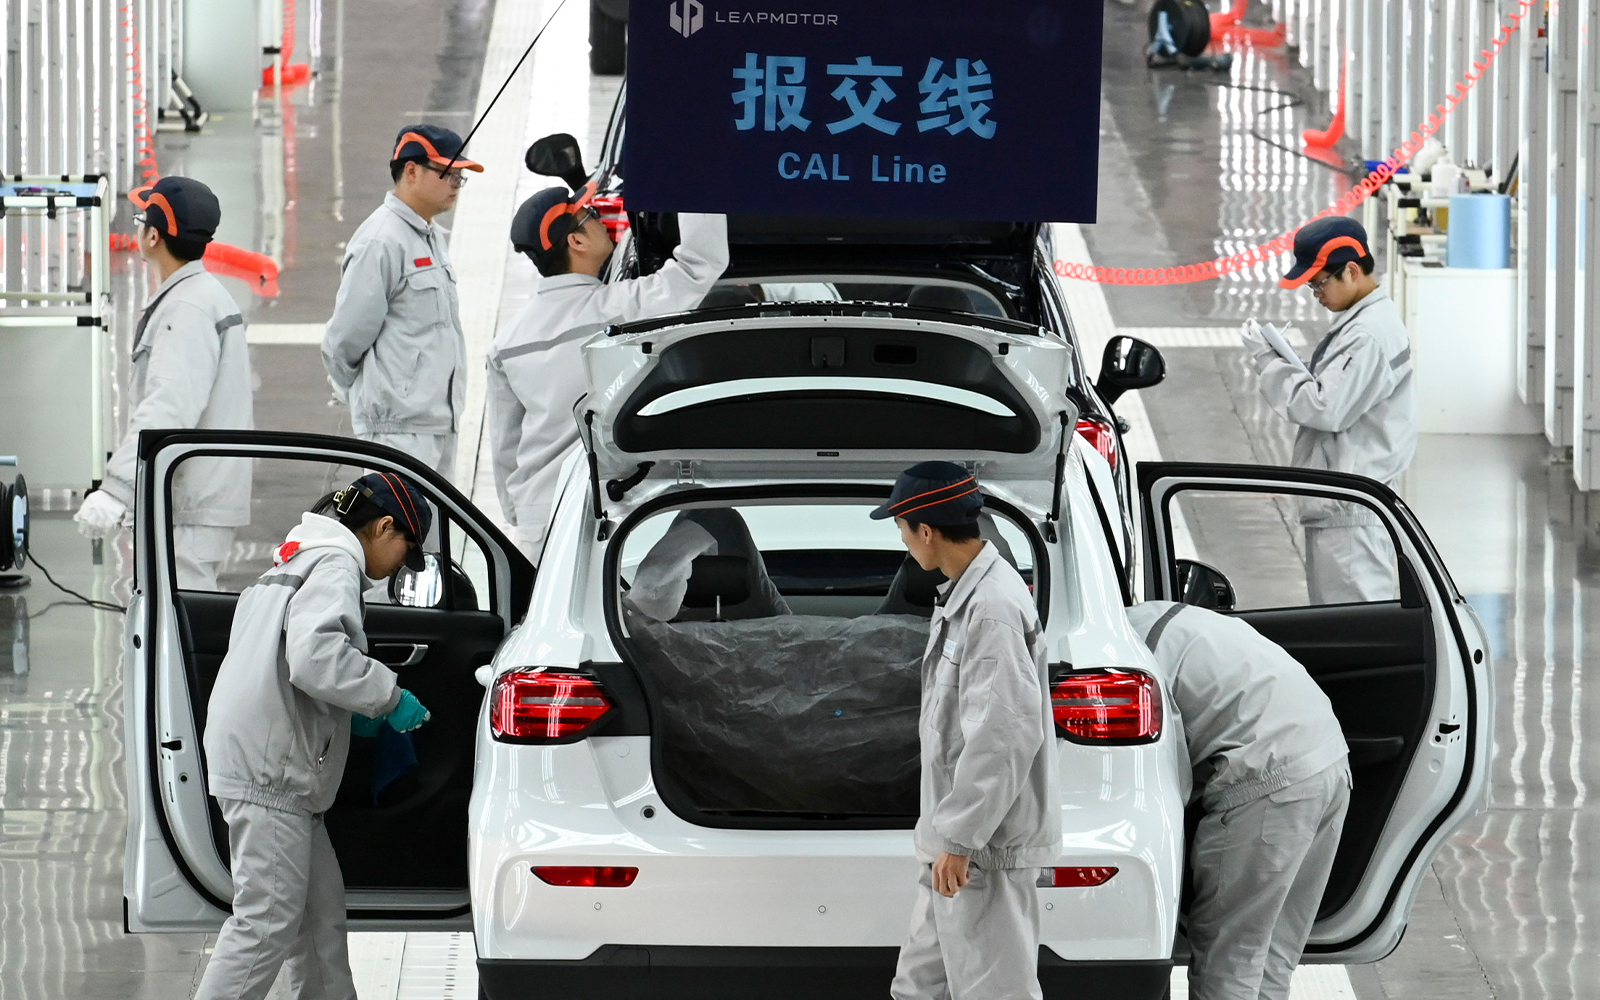 จีนก้าวขึ้นมาเป็นผู้นำอุตสาหกรรมรถยนต์ไฟฟ้าได้อย่างไร?​ แล้วประเทศอื่นทำตามได้ไหม?